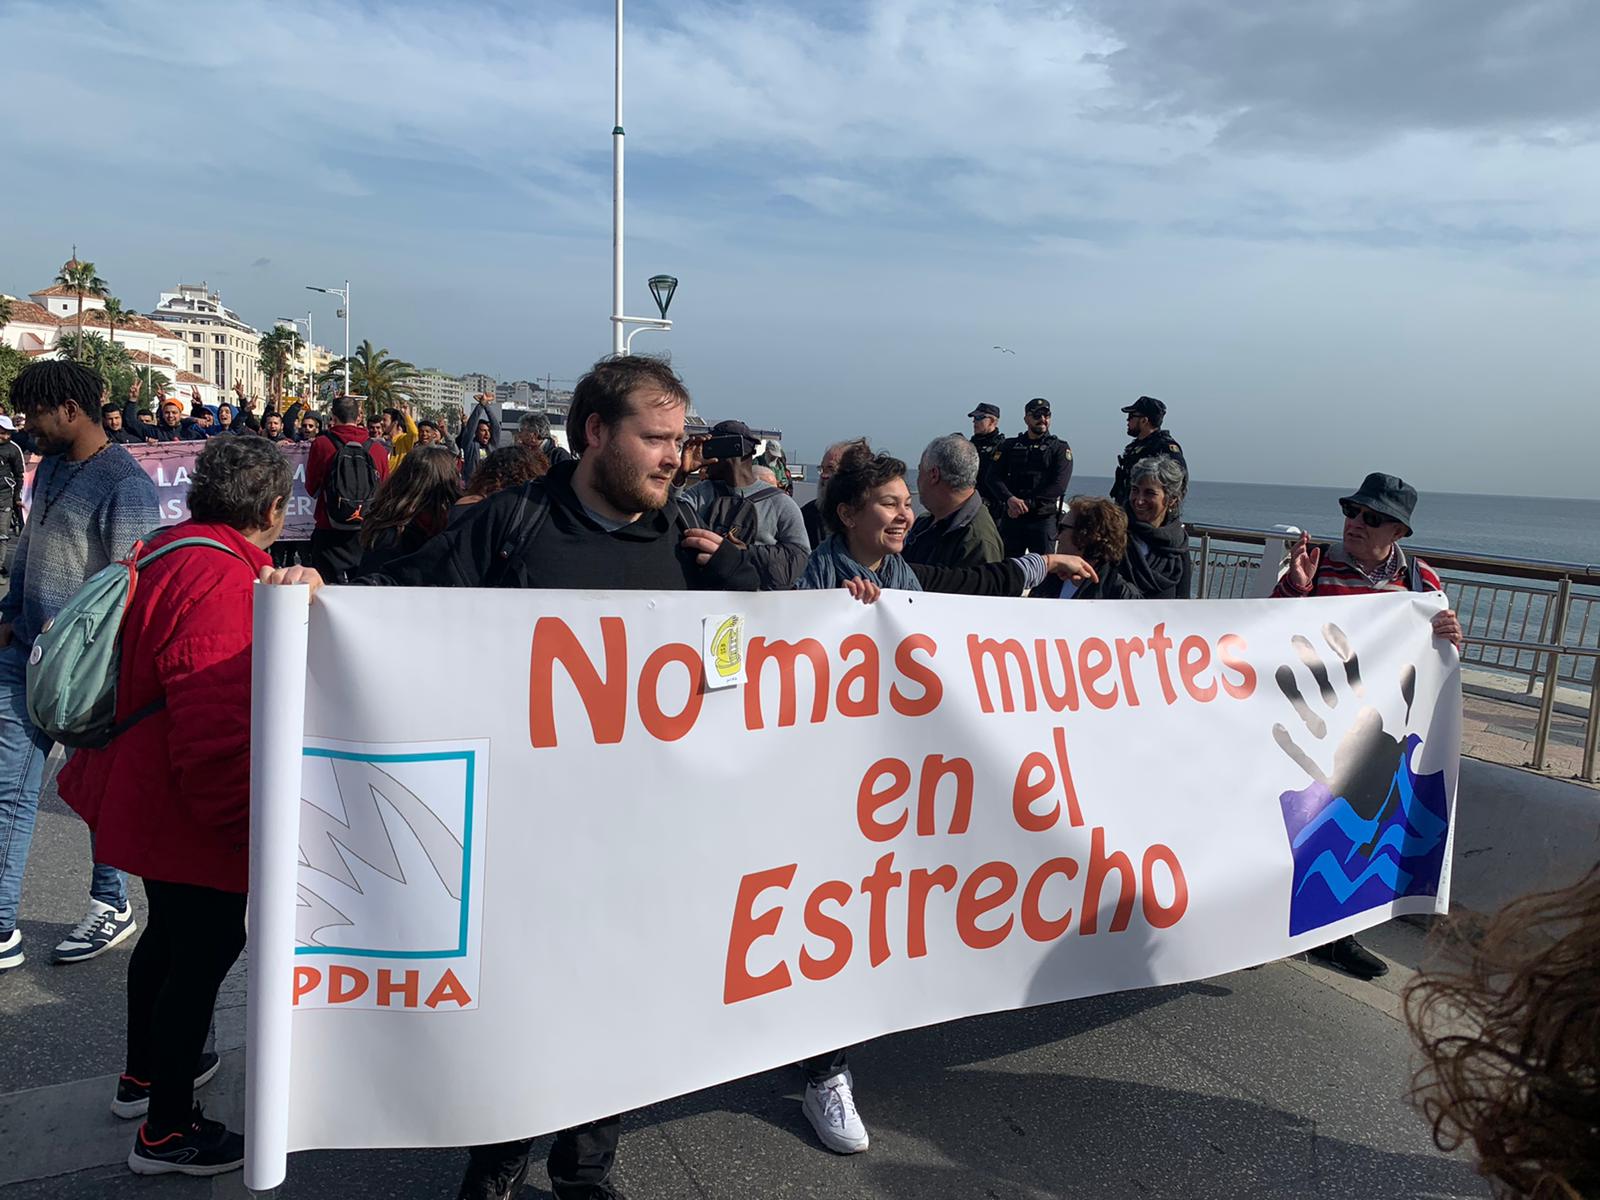 Protesto em Ceuta homenageia imigrantes mortos em praia e critica política europeia